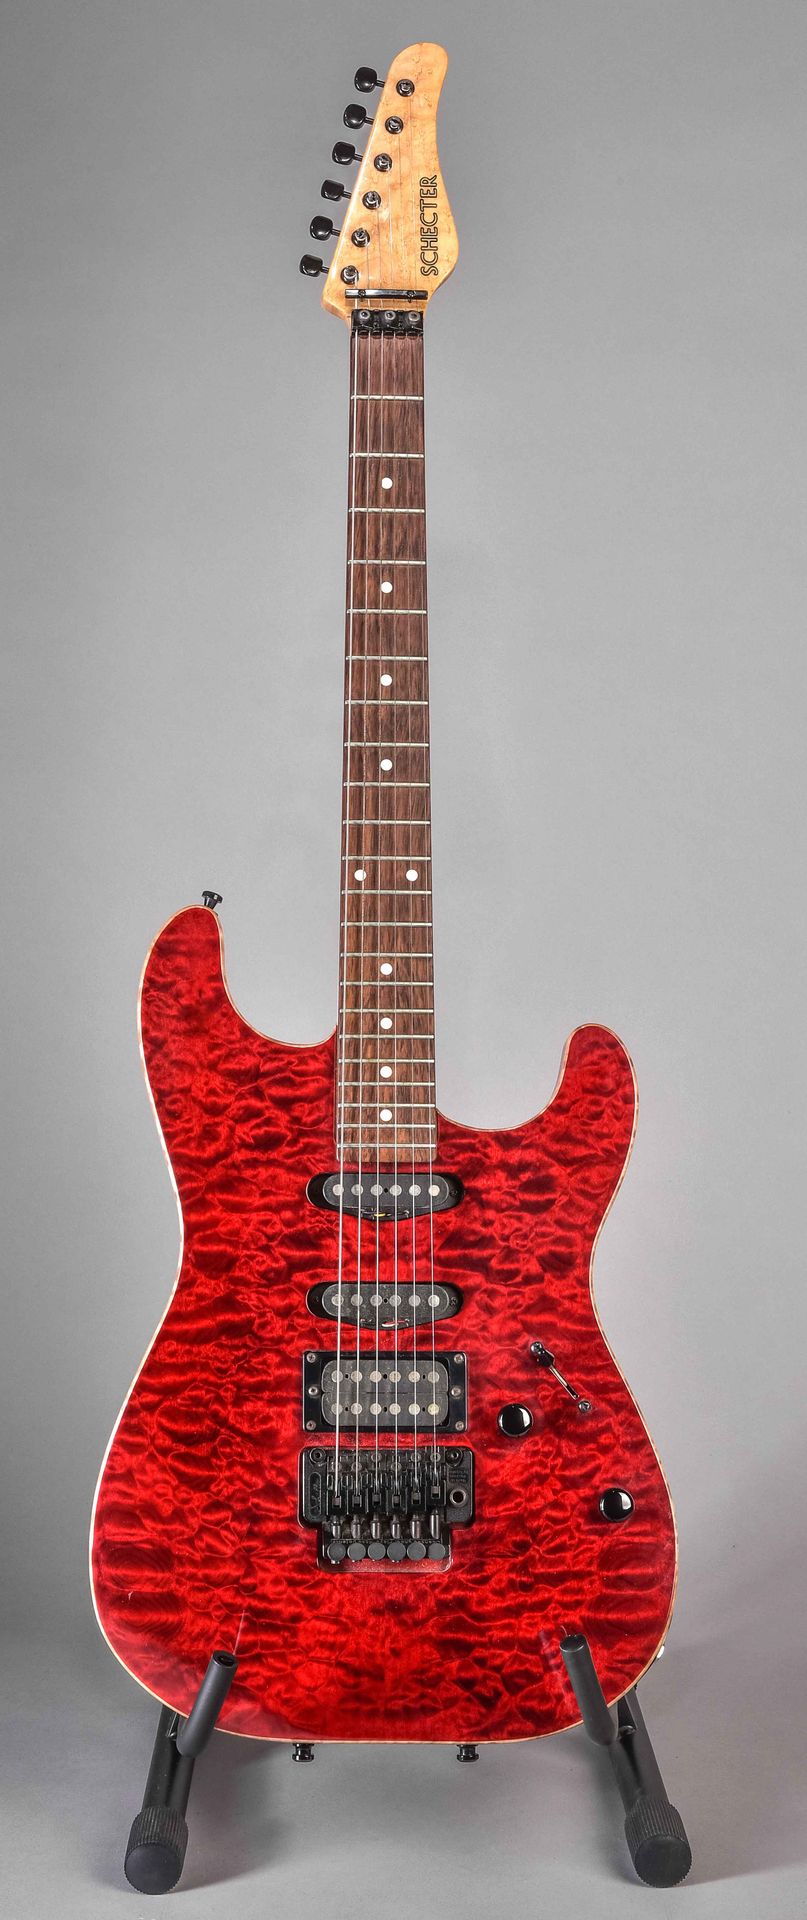 Null Guitarra, Schecter, 92275, USA, longitud 97 x 33 cm, estuche original